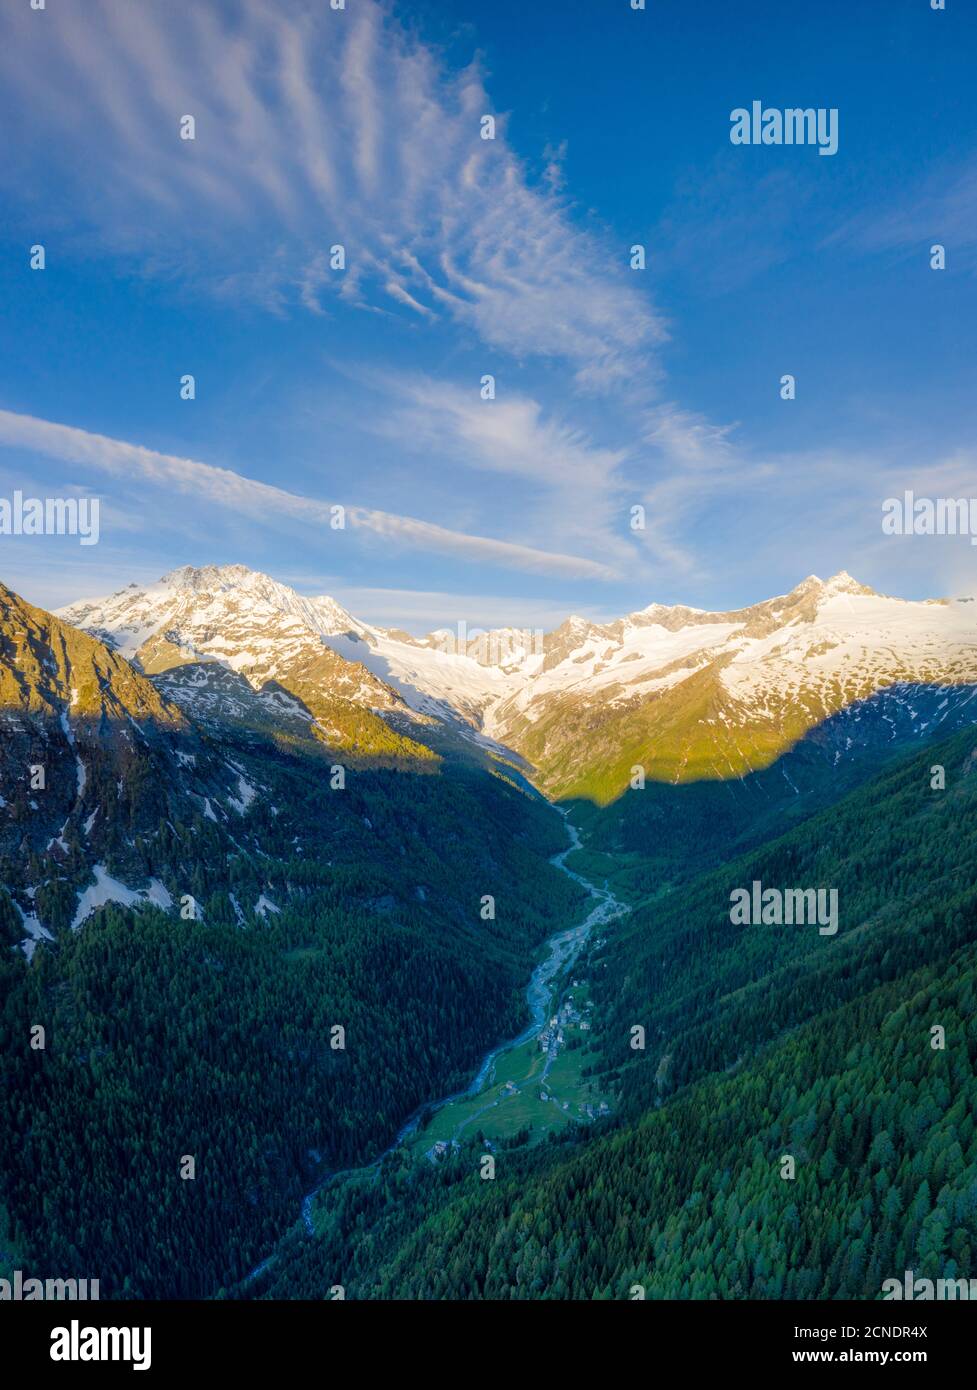 Vue panoramique aérienne de Monte Disgrazia et de la vallée de Chiareggio à l'aube, Valmalenco, province de Sondrio, Valtellina, Lombardie, Italie, Europe Banque D'Images